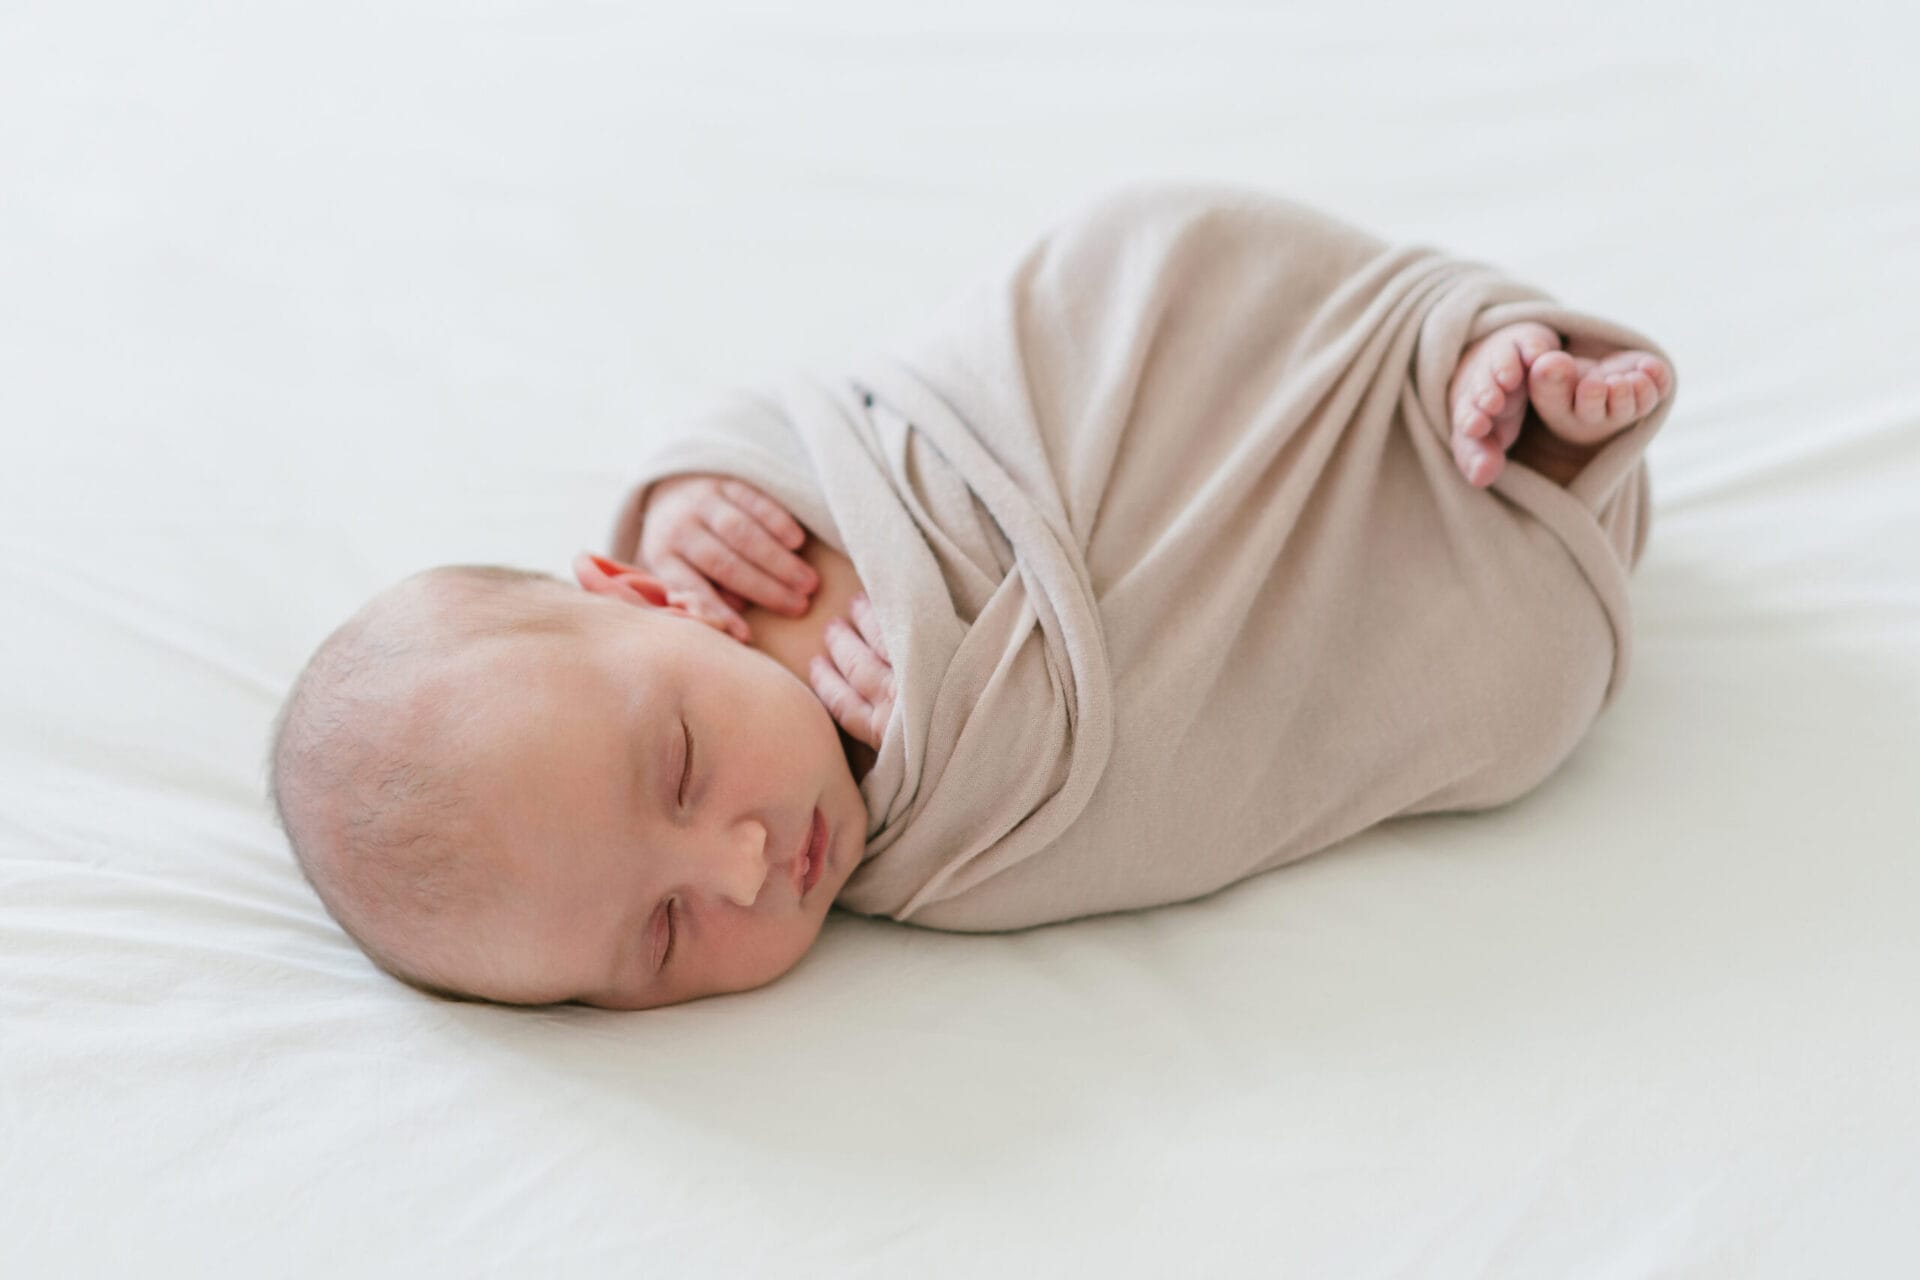 Die wichtigsten Fragen bei einem Newborn Shooting, Newborn Shooting, Entspannte Neugeborenenfotos in den eigenen 4 Wänden, neugeborenenfotos, entspannte neugeborenenfotos